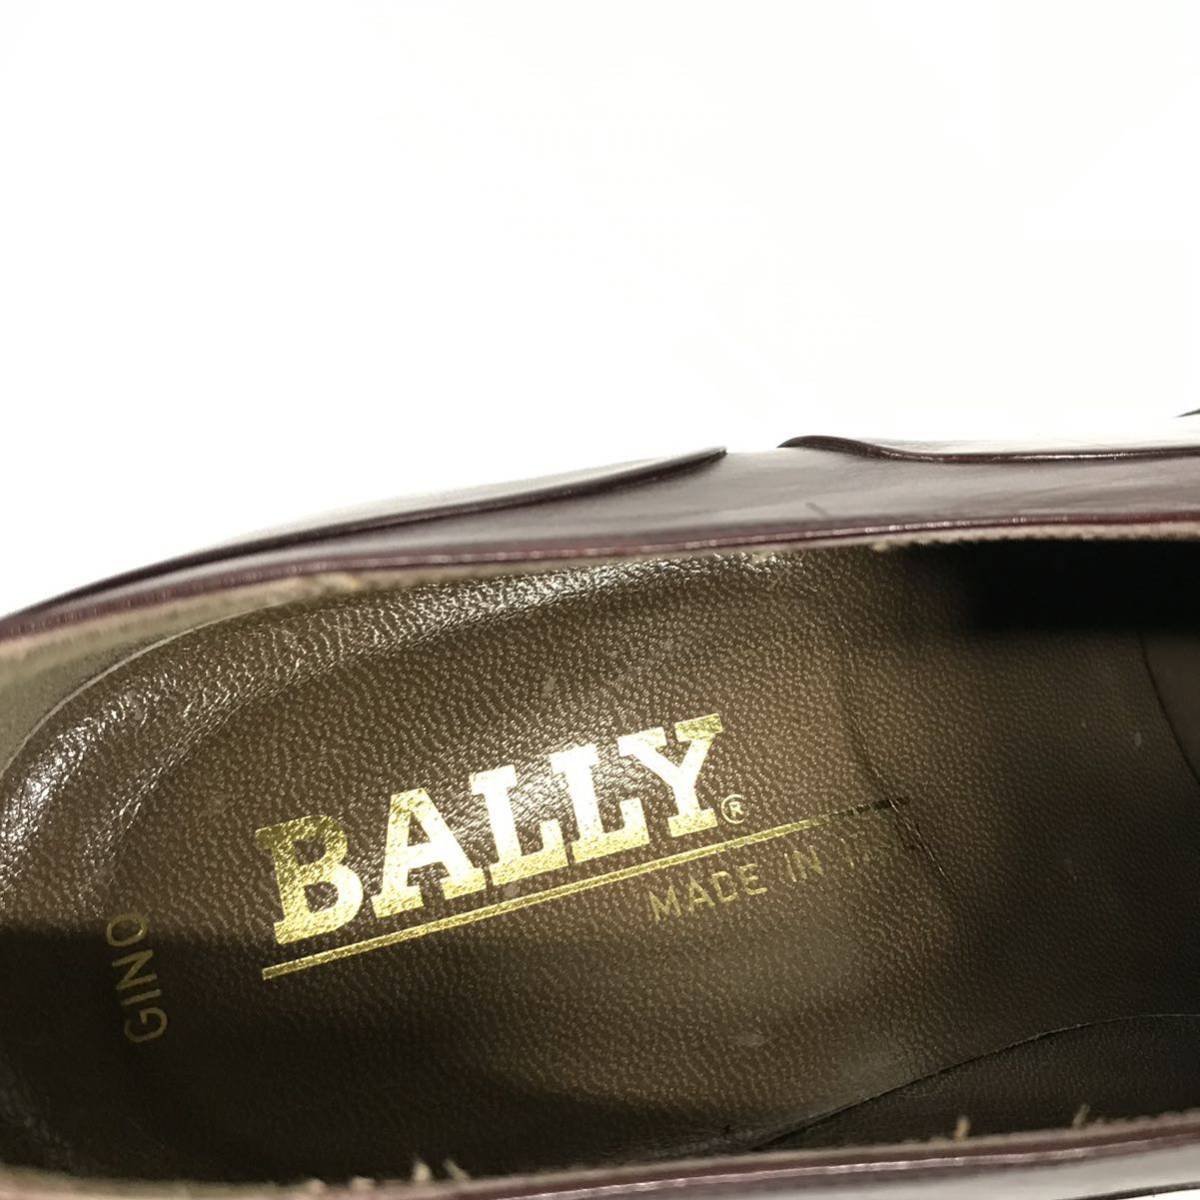 美品【バリー】本物 BALLY 靴 25.5cm ストレートチップ ビジネスシューズ 内羽根式 本革 レザー 男性用 メンズ イタリア製 7 1/2 M_画像9